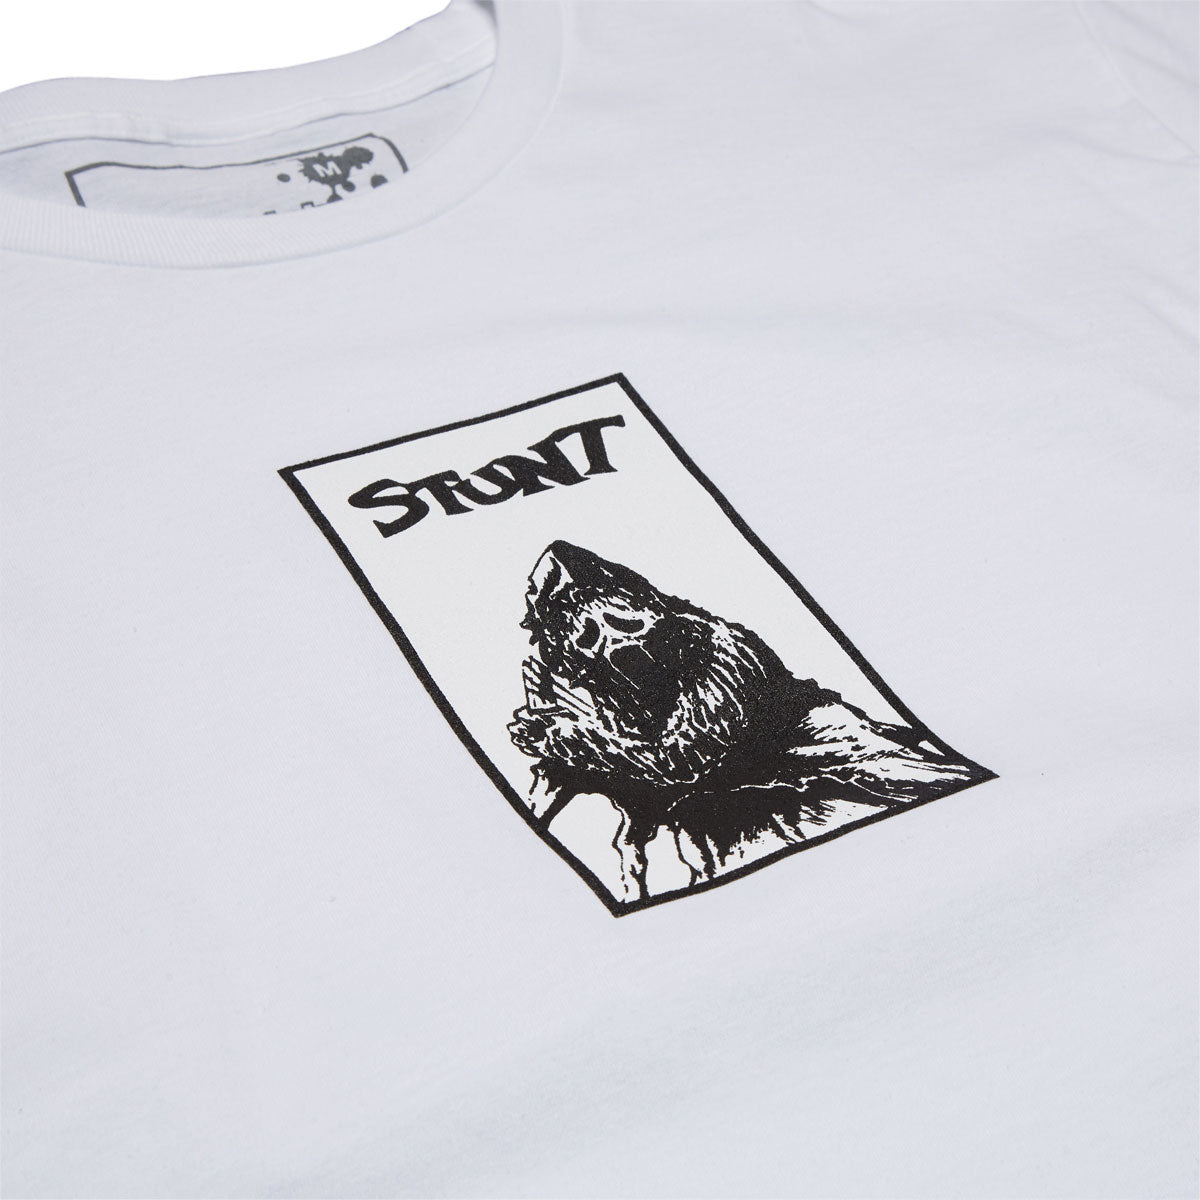 Stunt Ripper T-Shirt - White image 2